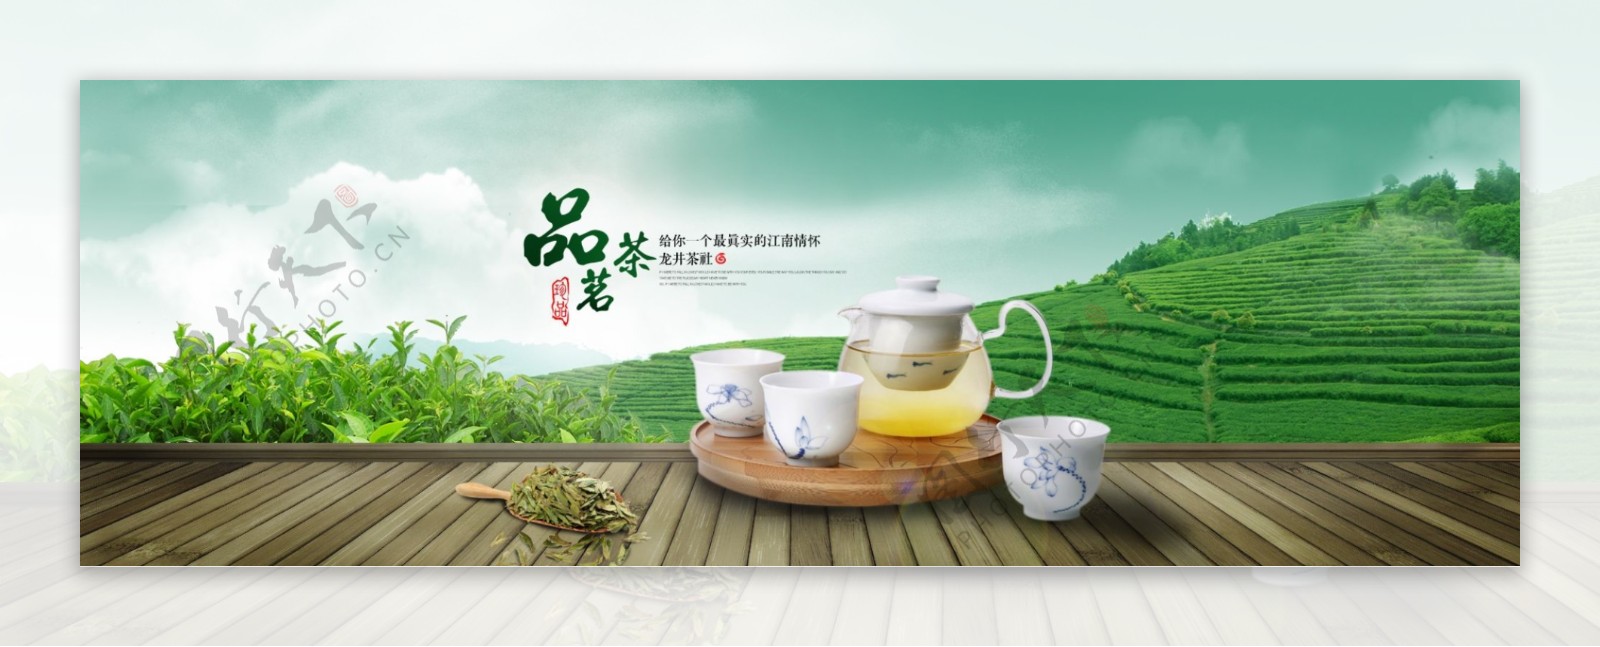 中国风淡雅绿茶促销海报PSD素材